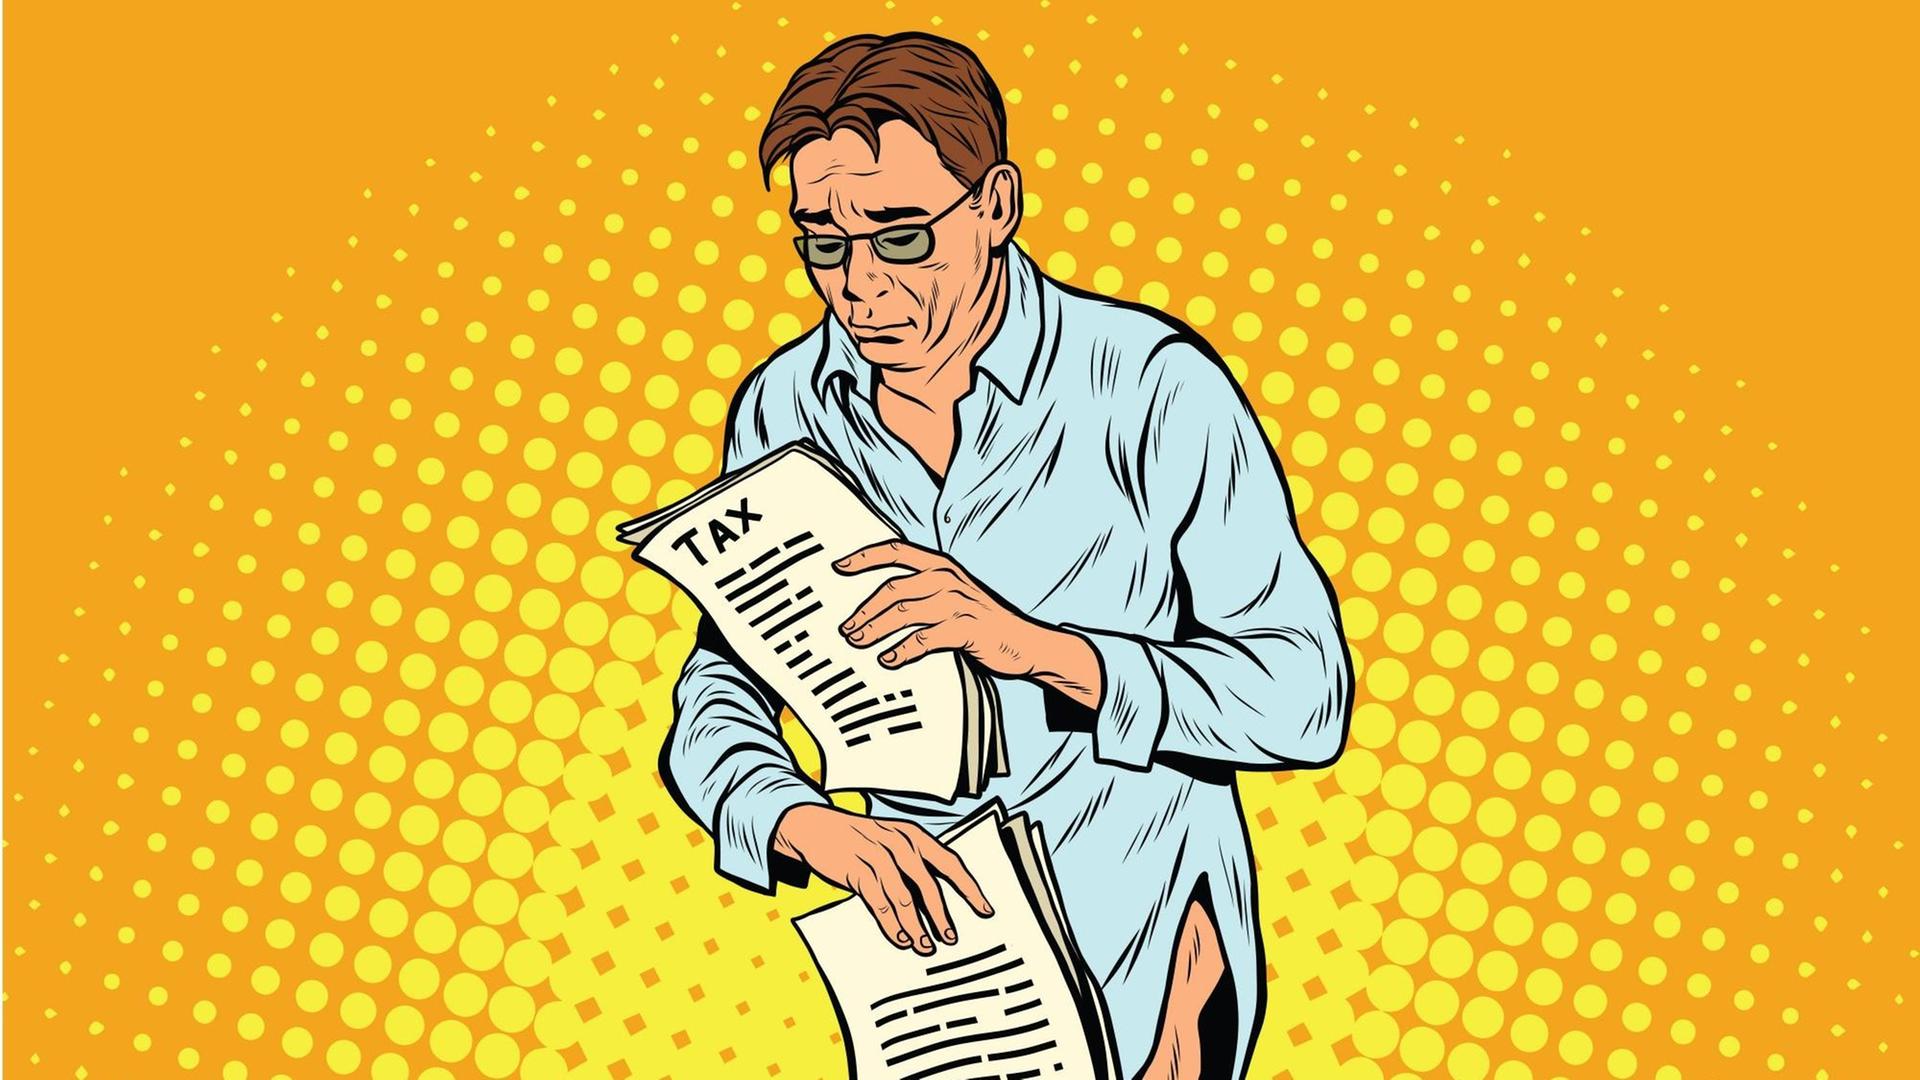 Eine Illustration zeigt einen Mann mit zerknittertem Hemd und ohne Hose, der mit traurigem Blick seine Steuerunterlagen prüft.